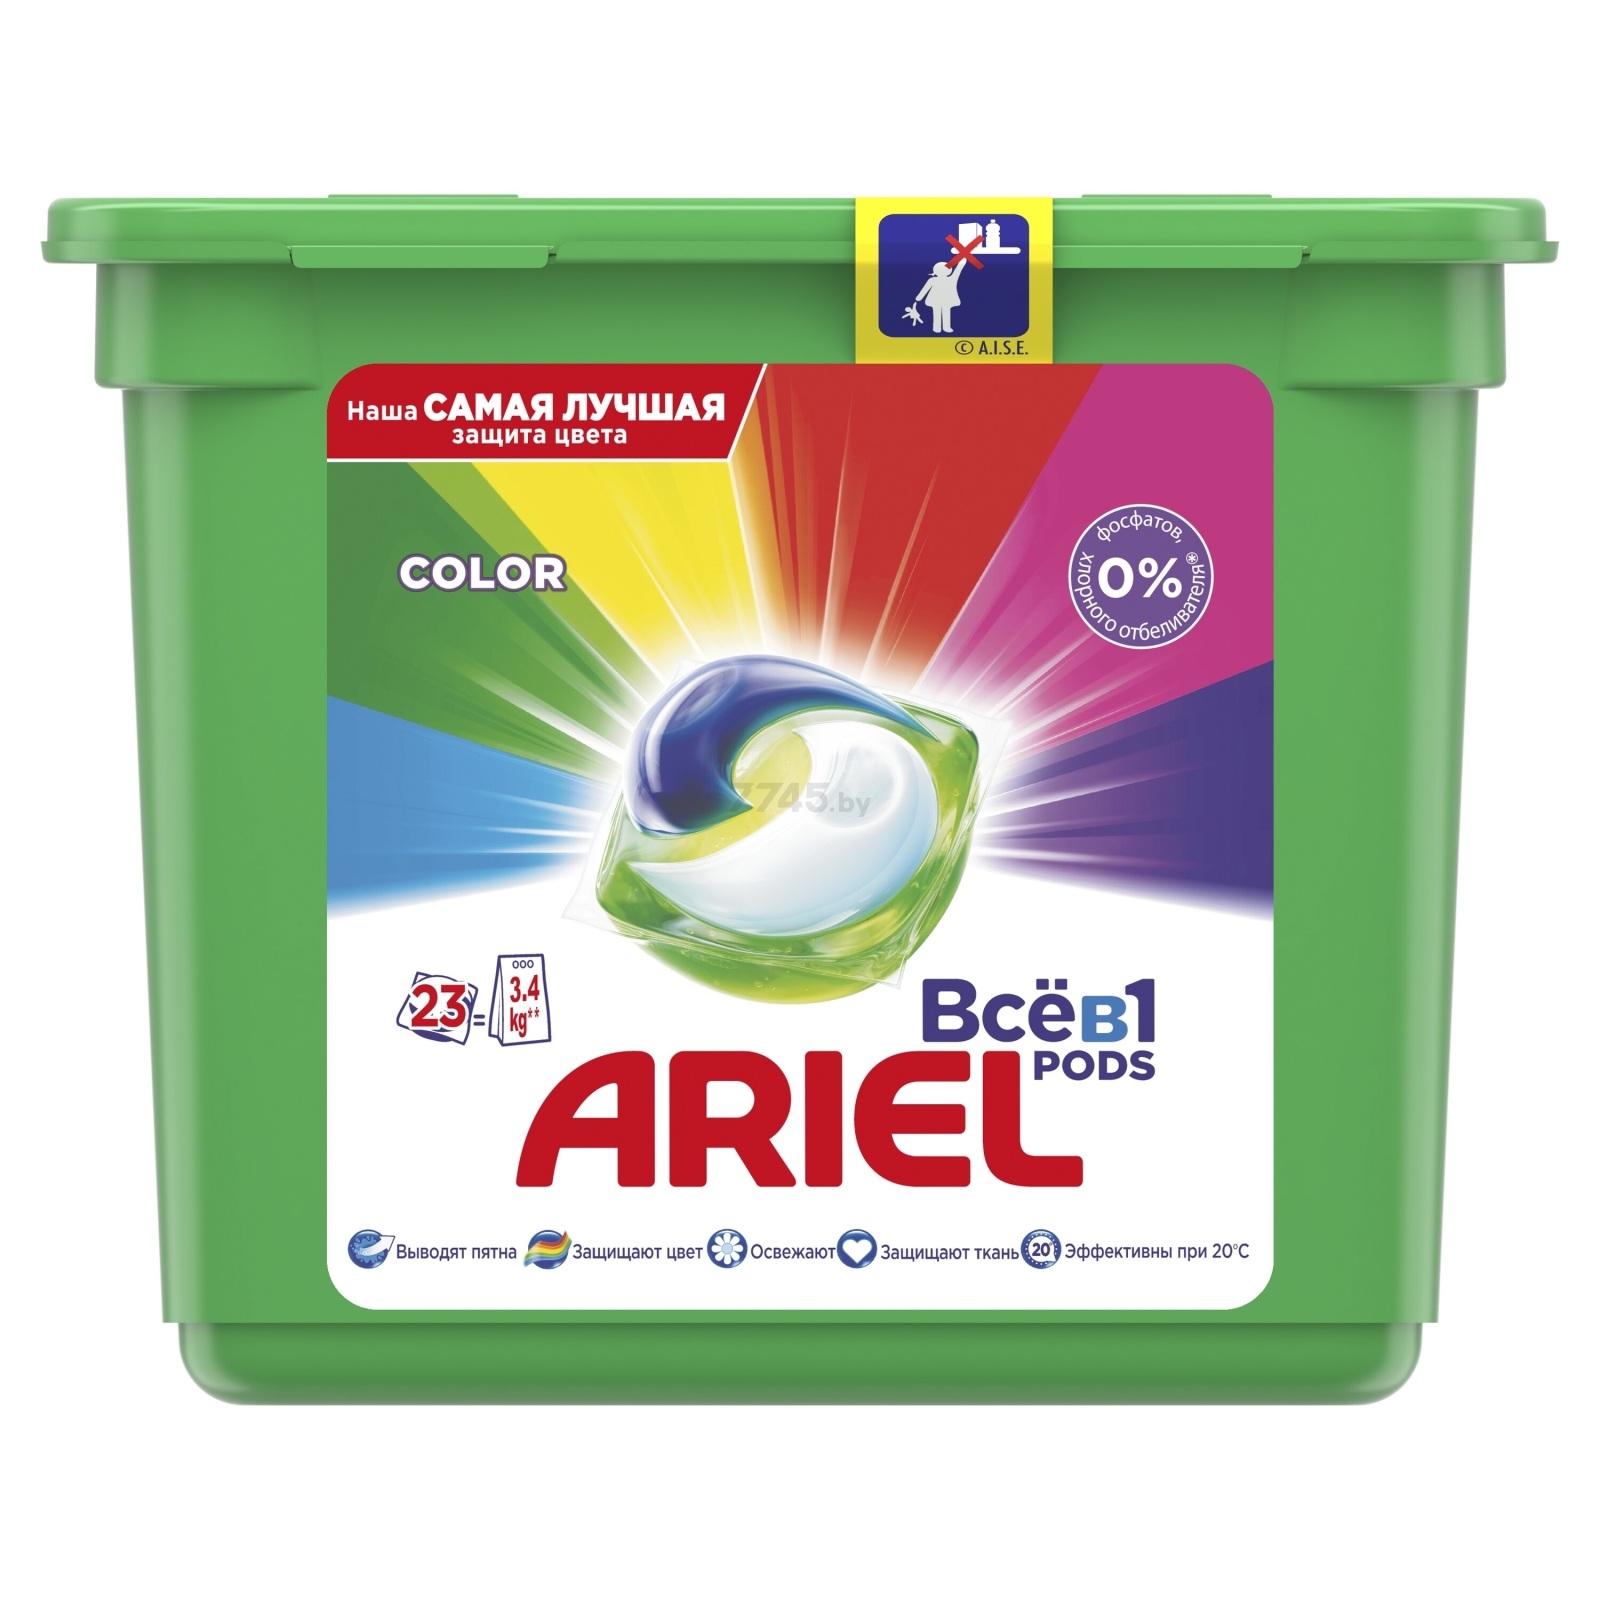 Капсулы для стирки ARIEL Pods Всё-в-1 Color 23 штуки (4084500078710) - Фото 2